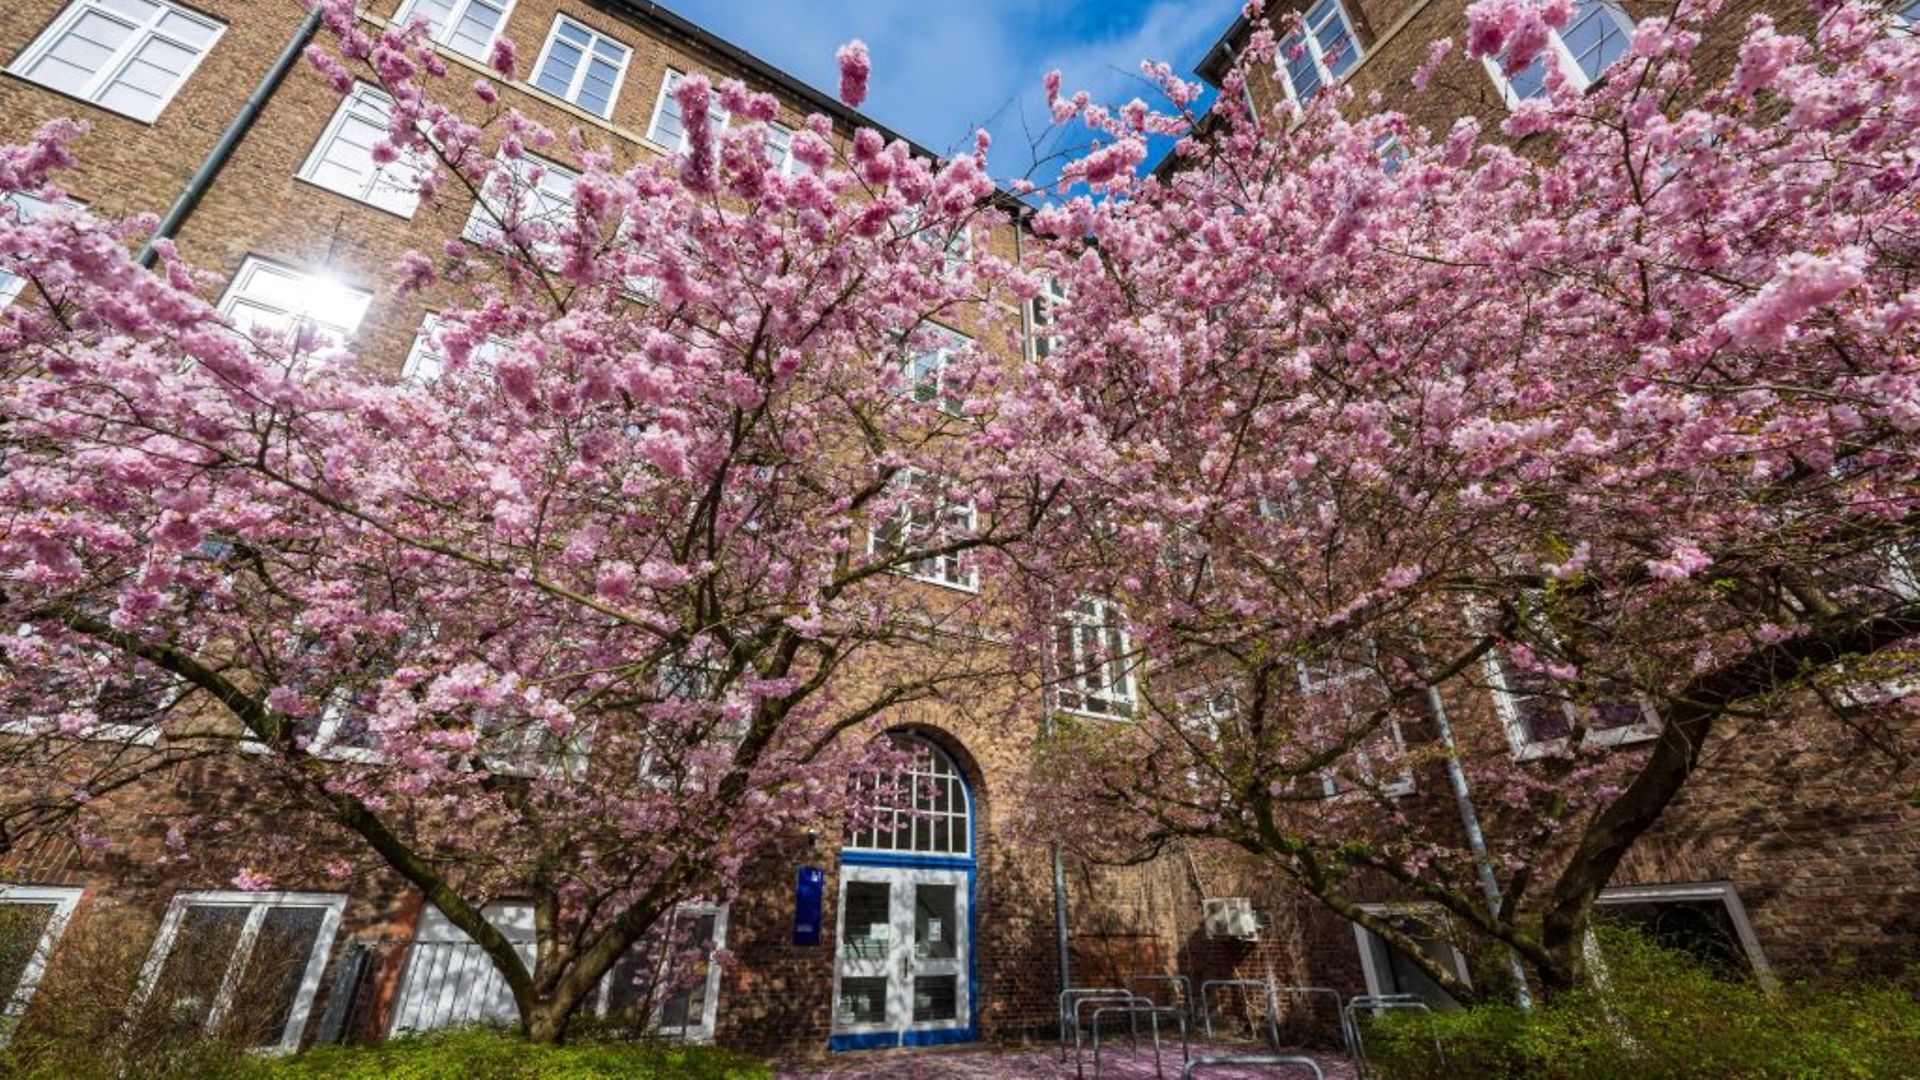 Vor dem Gebäude, in dem sich das LI befindet, stehen blühende Kirschbäume mit rosa Blüten.